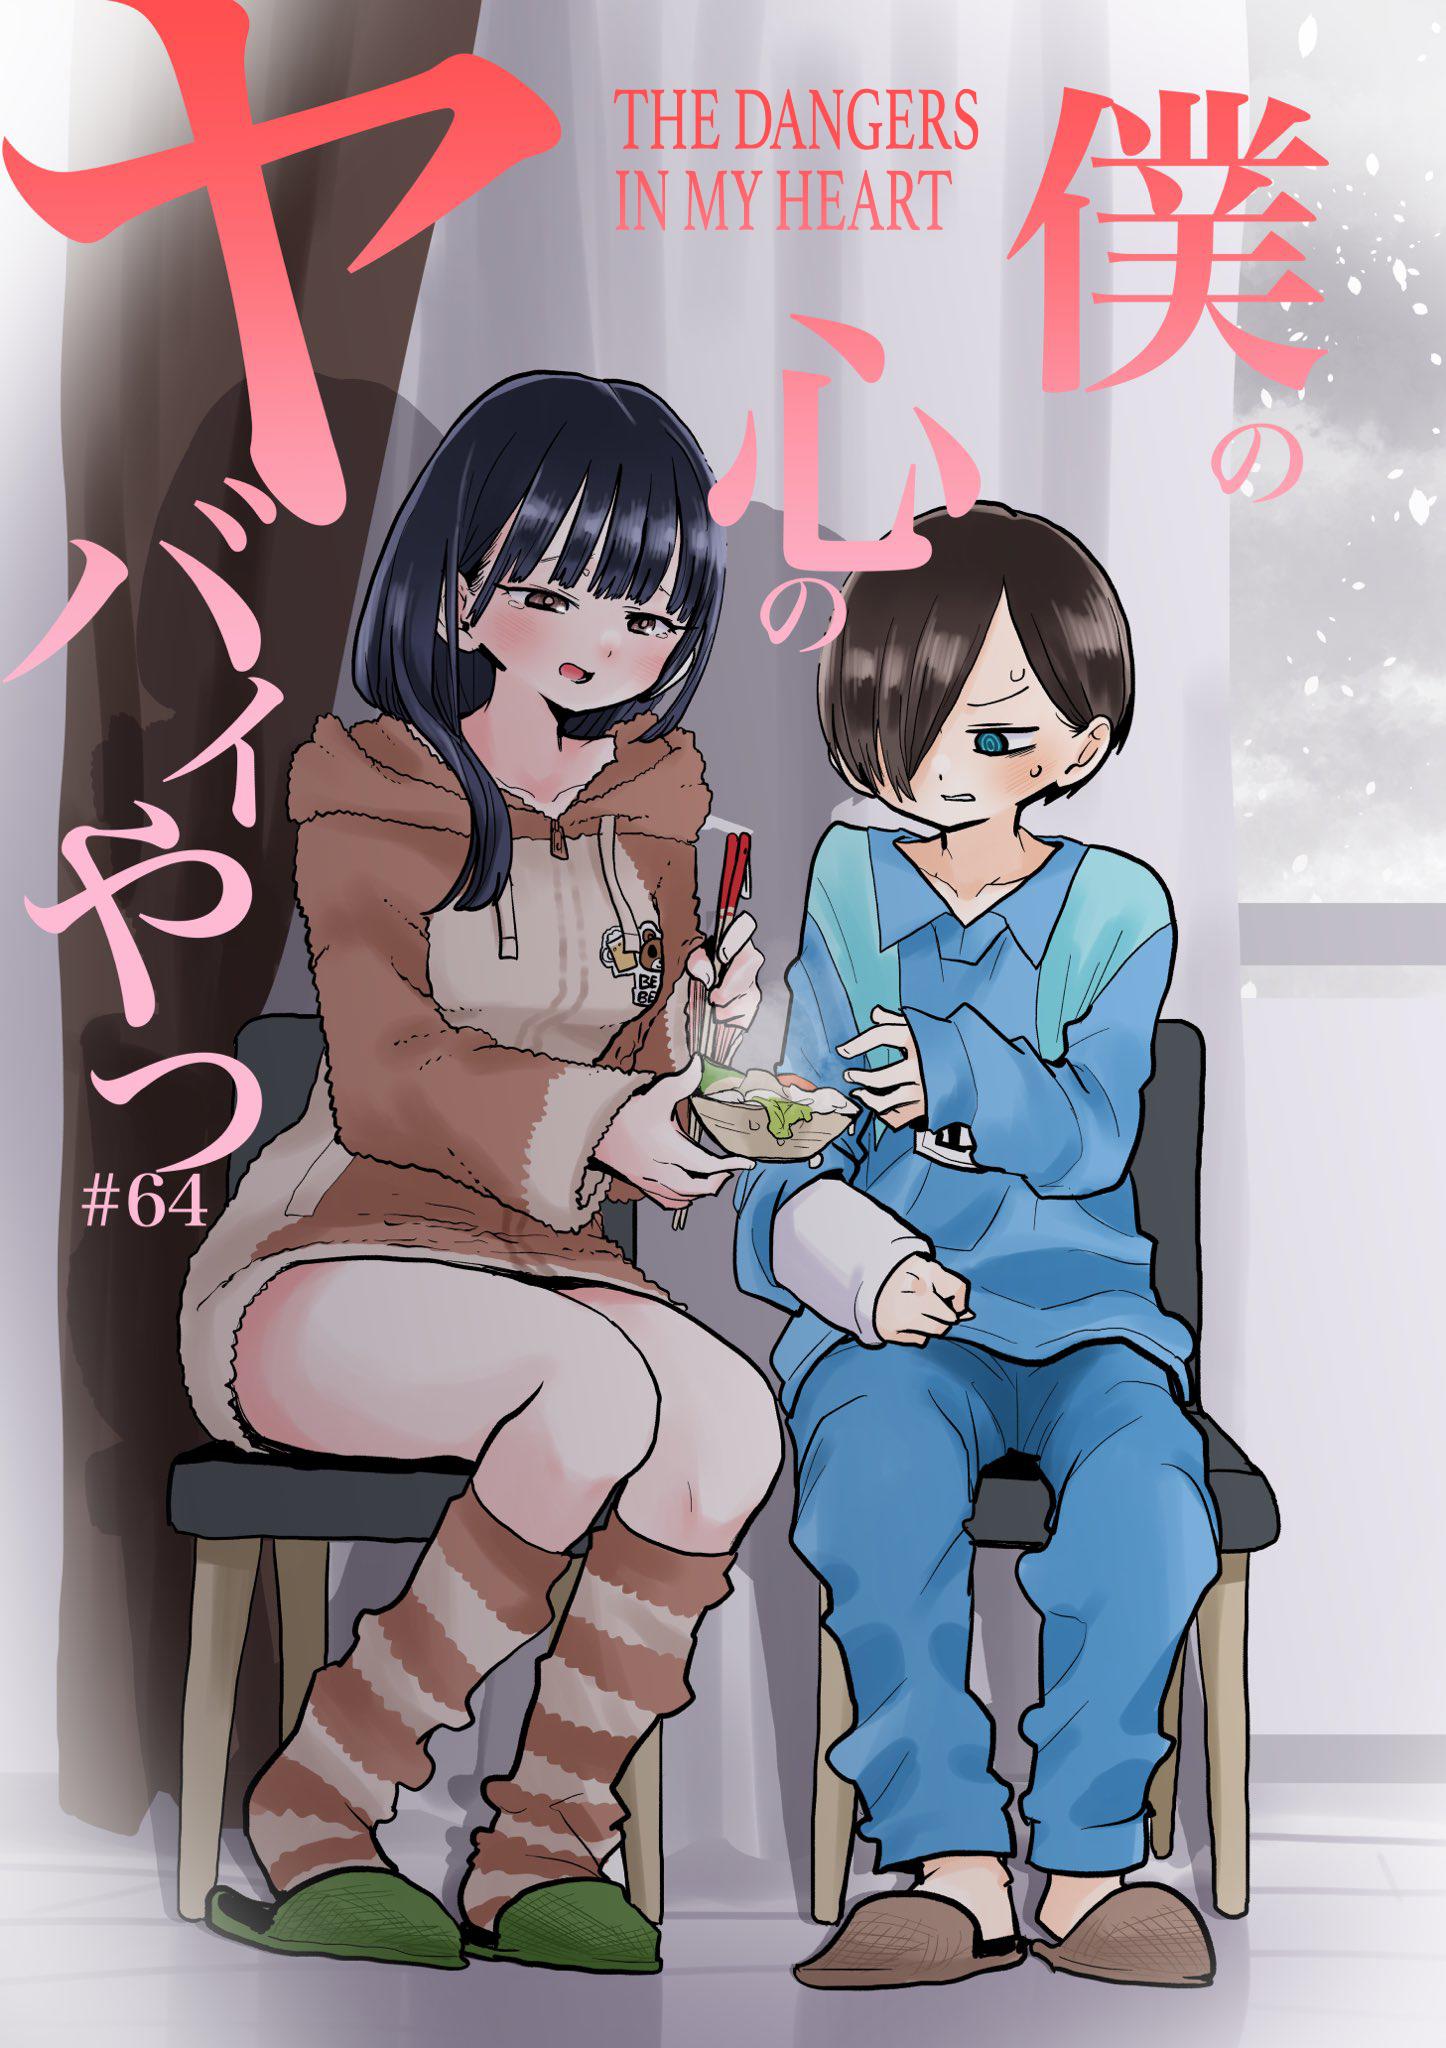 Read Boku no Kokoro no Yabai yatsu Manga English [New Chapters